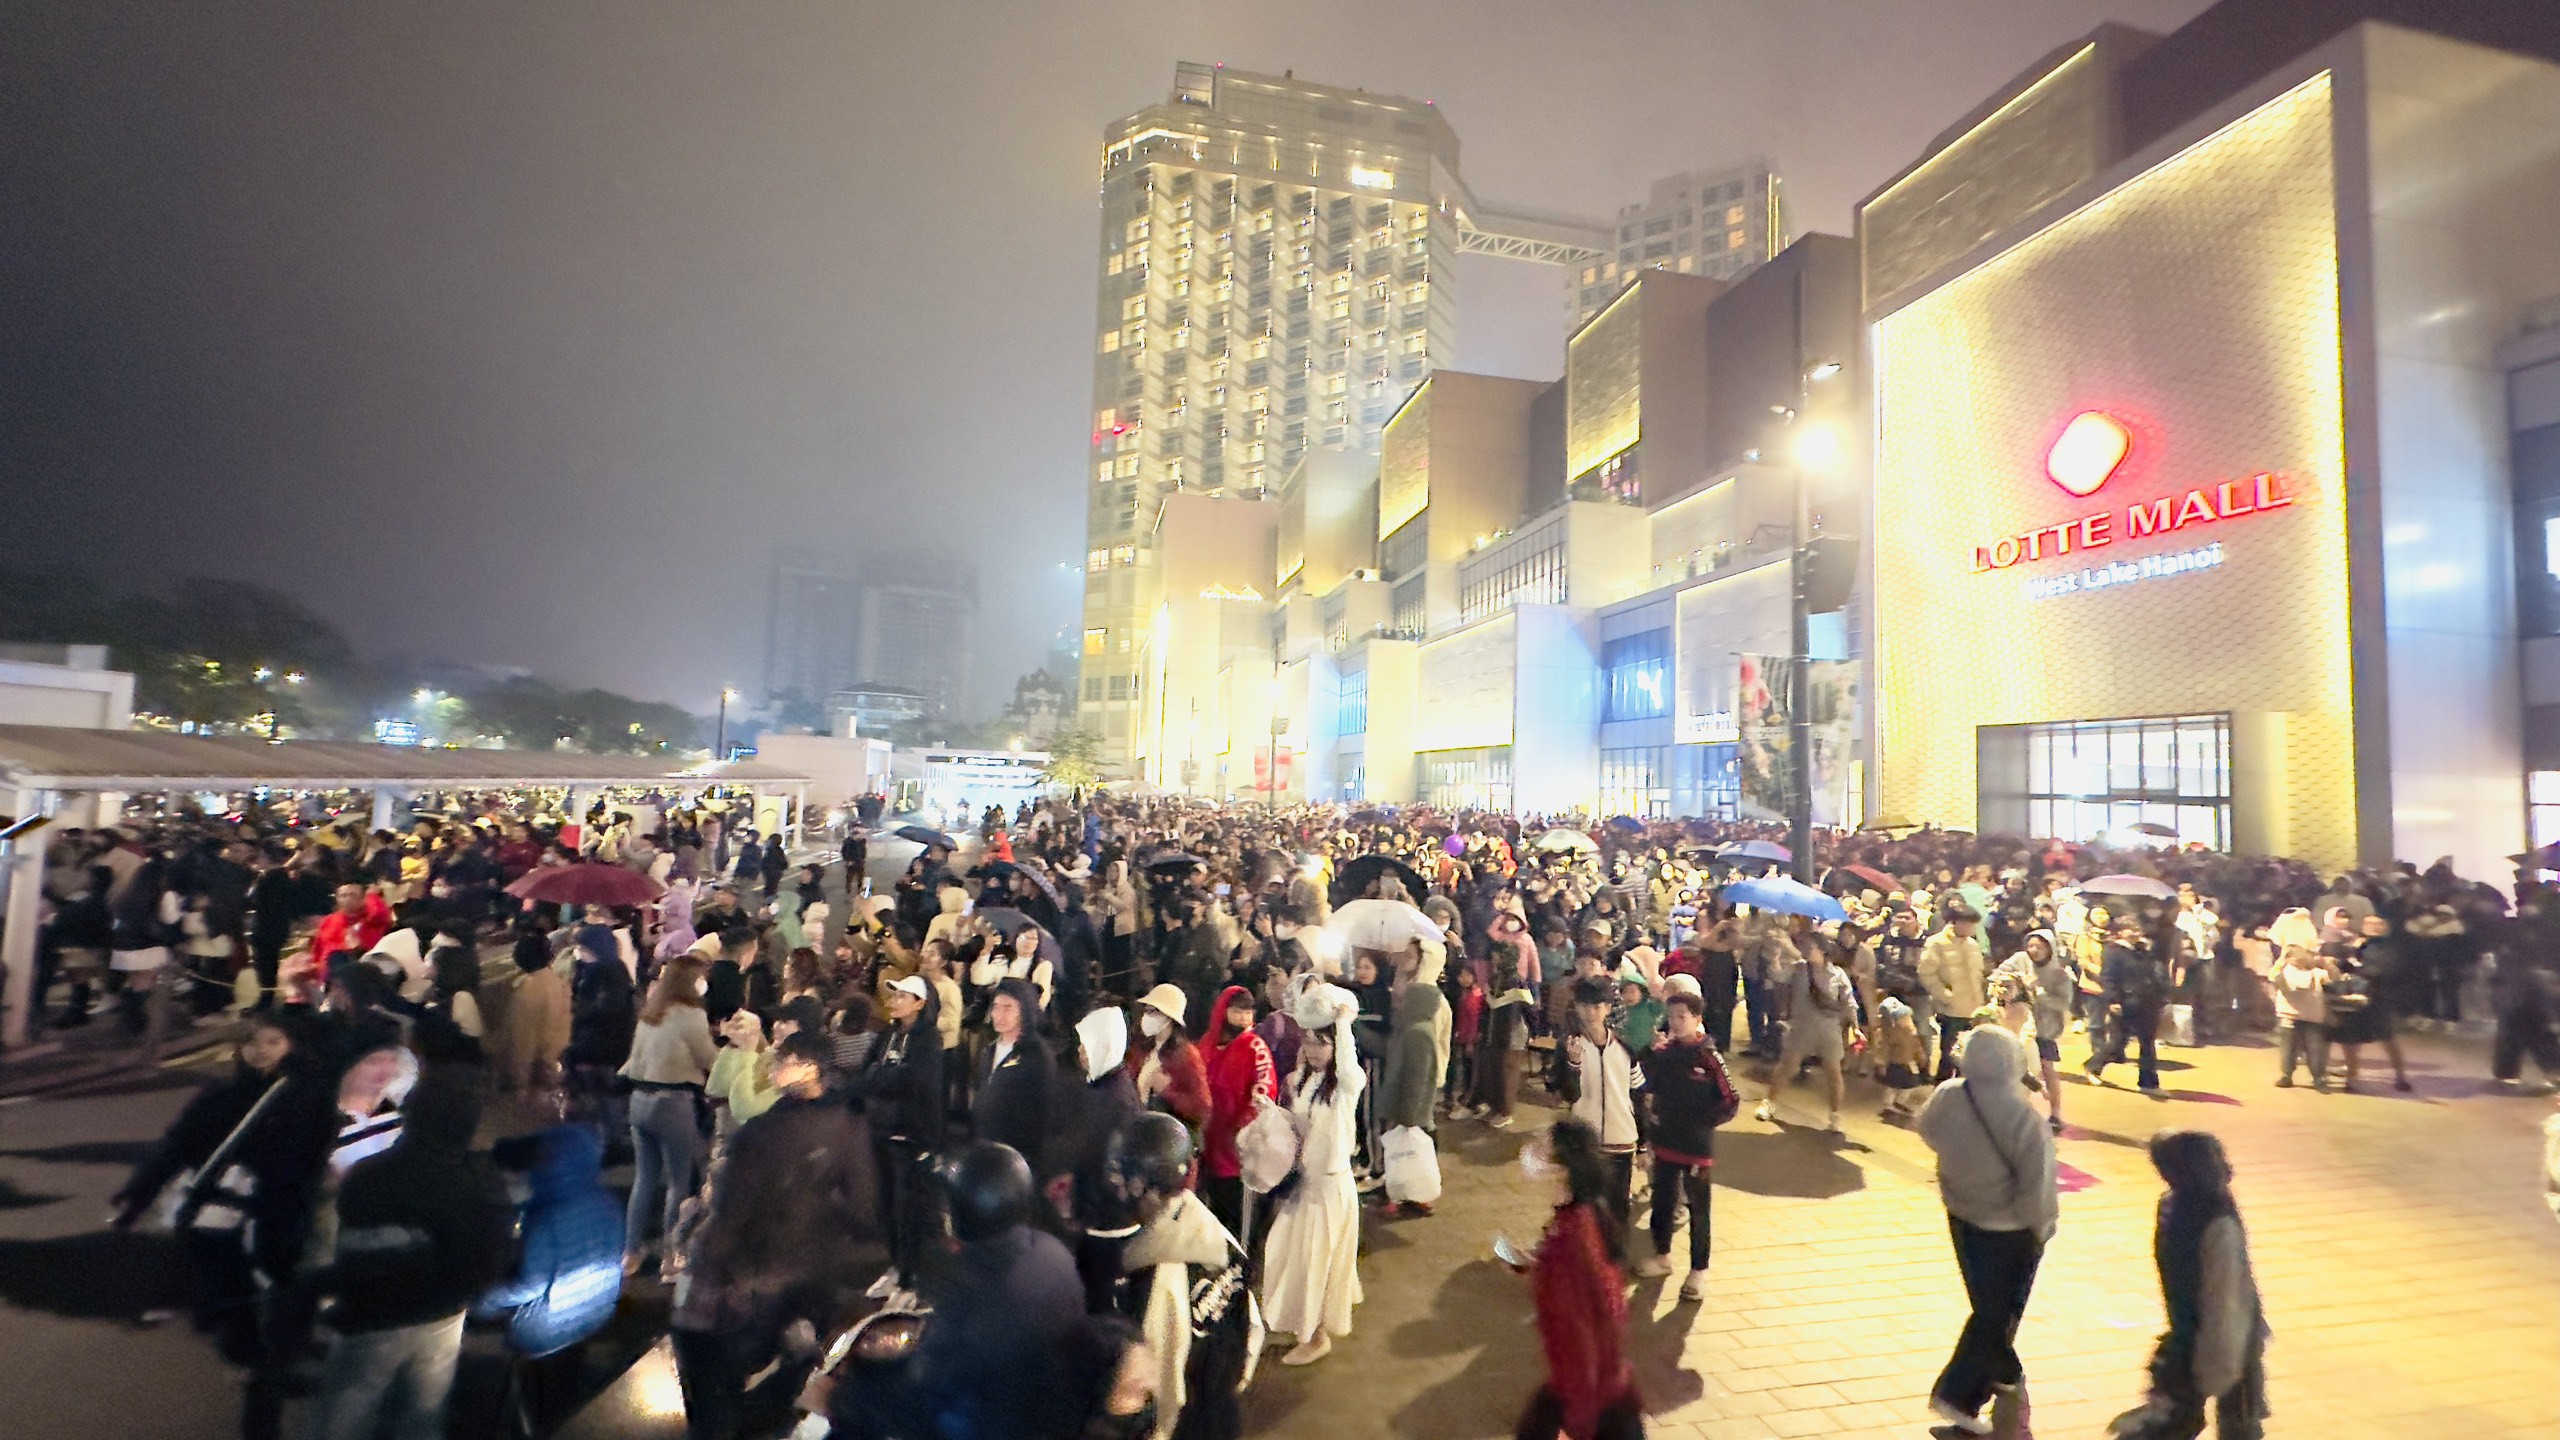 Sự kiện diễn ra vào cuối tuần nên rất đông người dân đã đổ về Hồ Tây và các khu vực lân cận phố Trịnh Công Sơn để xem màn trình diễn.